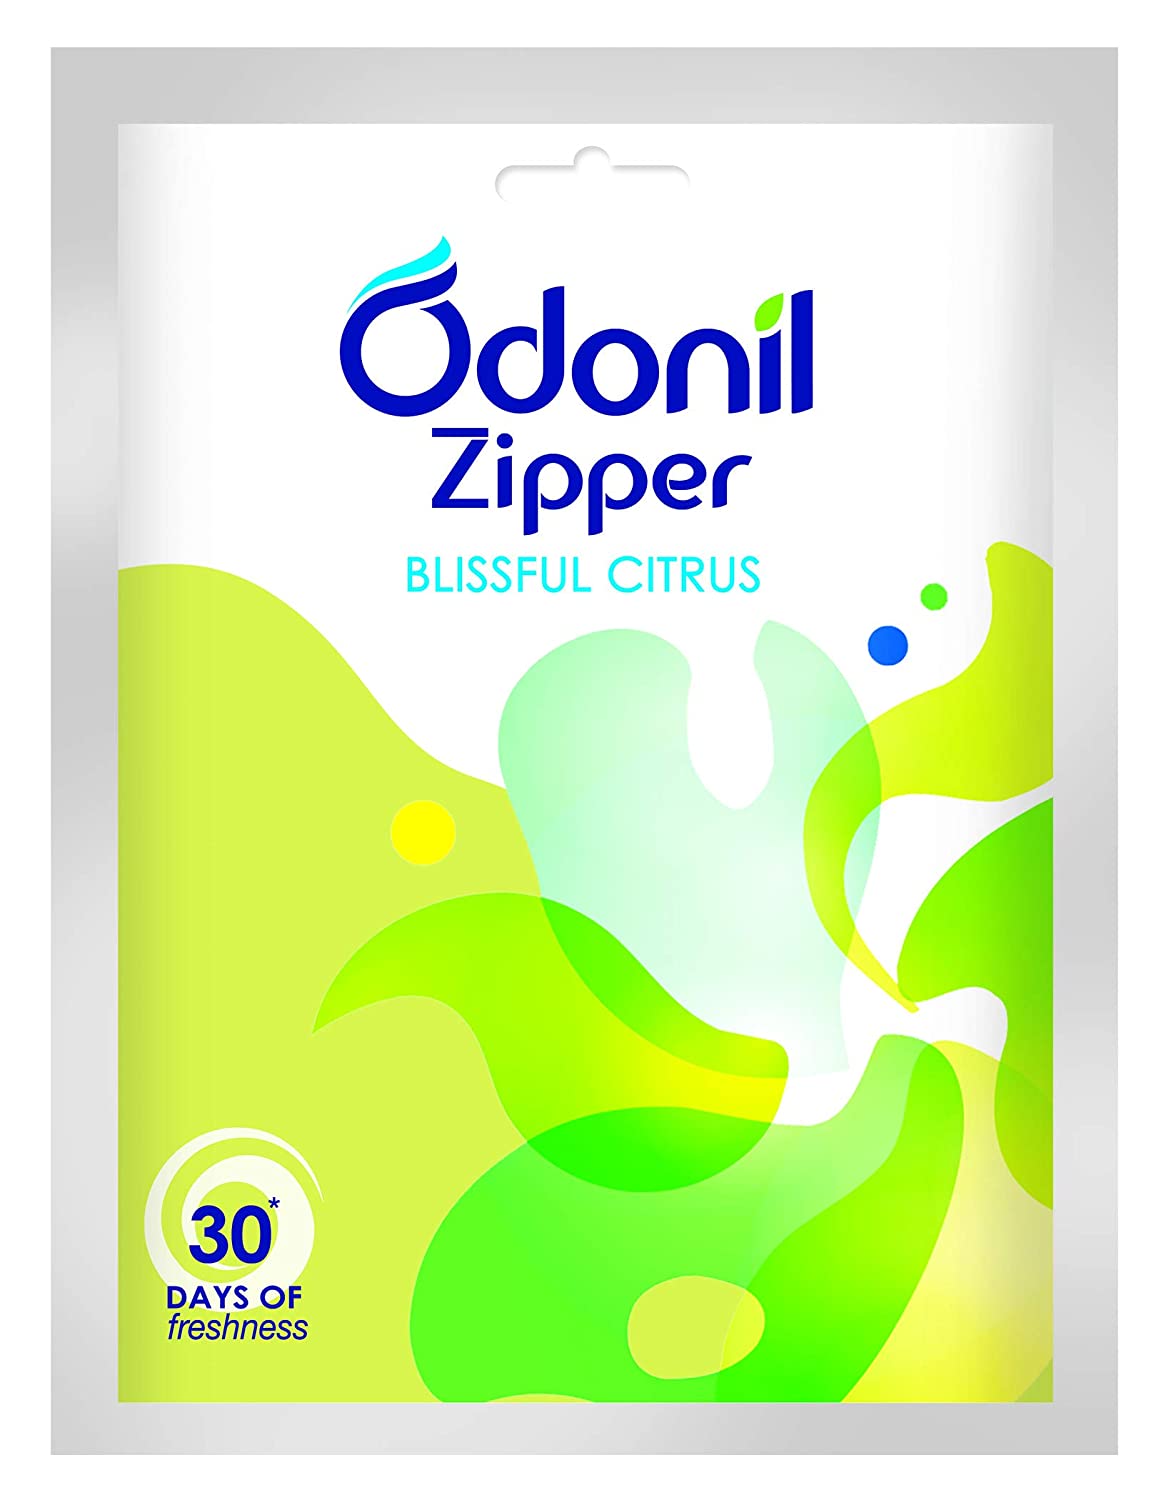 Odonil Zipper Blissful Citrus Air Freshener 10g